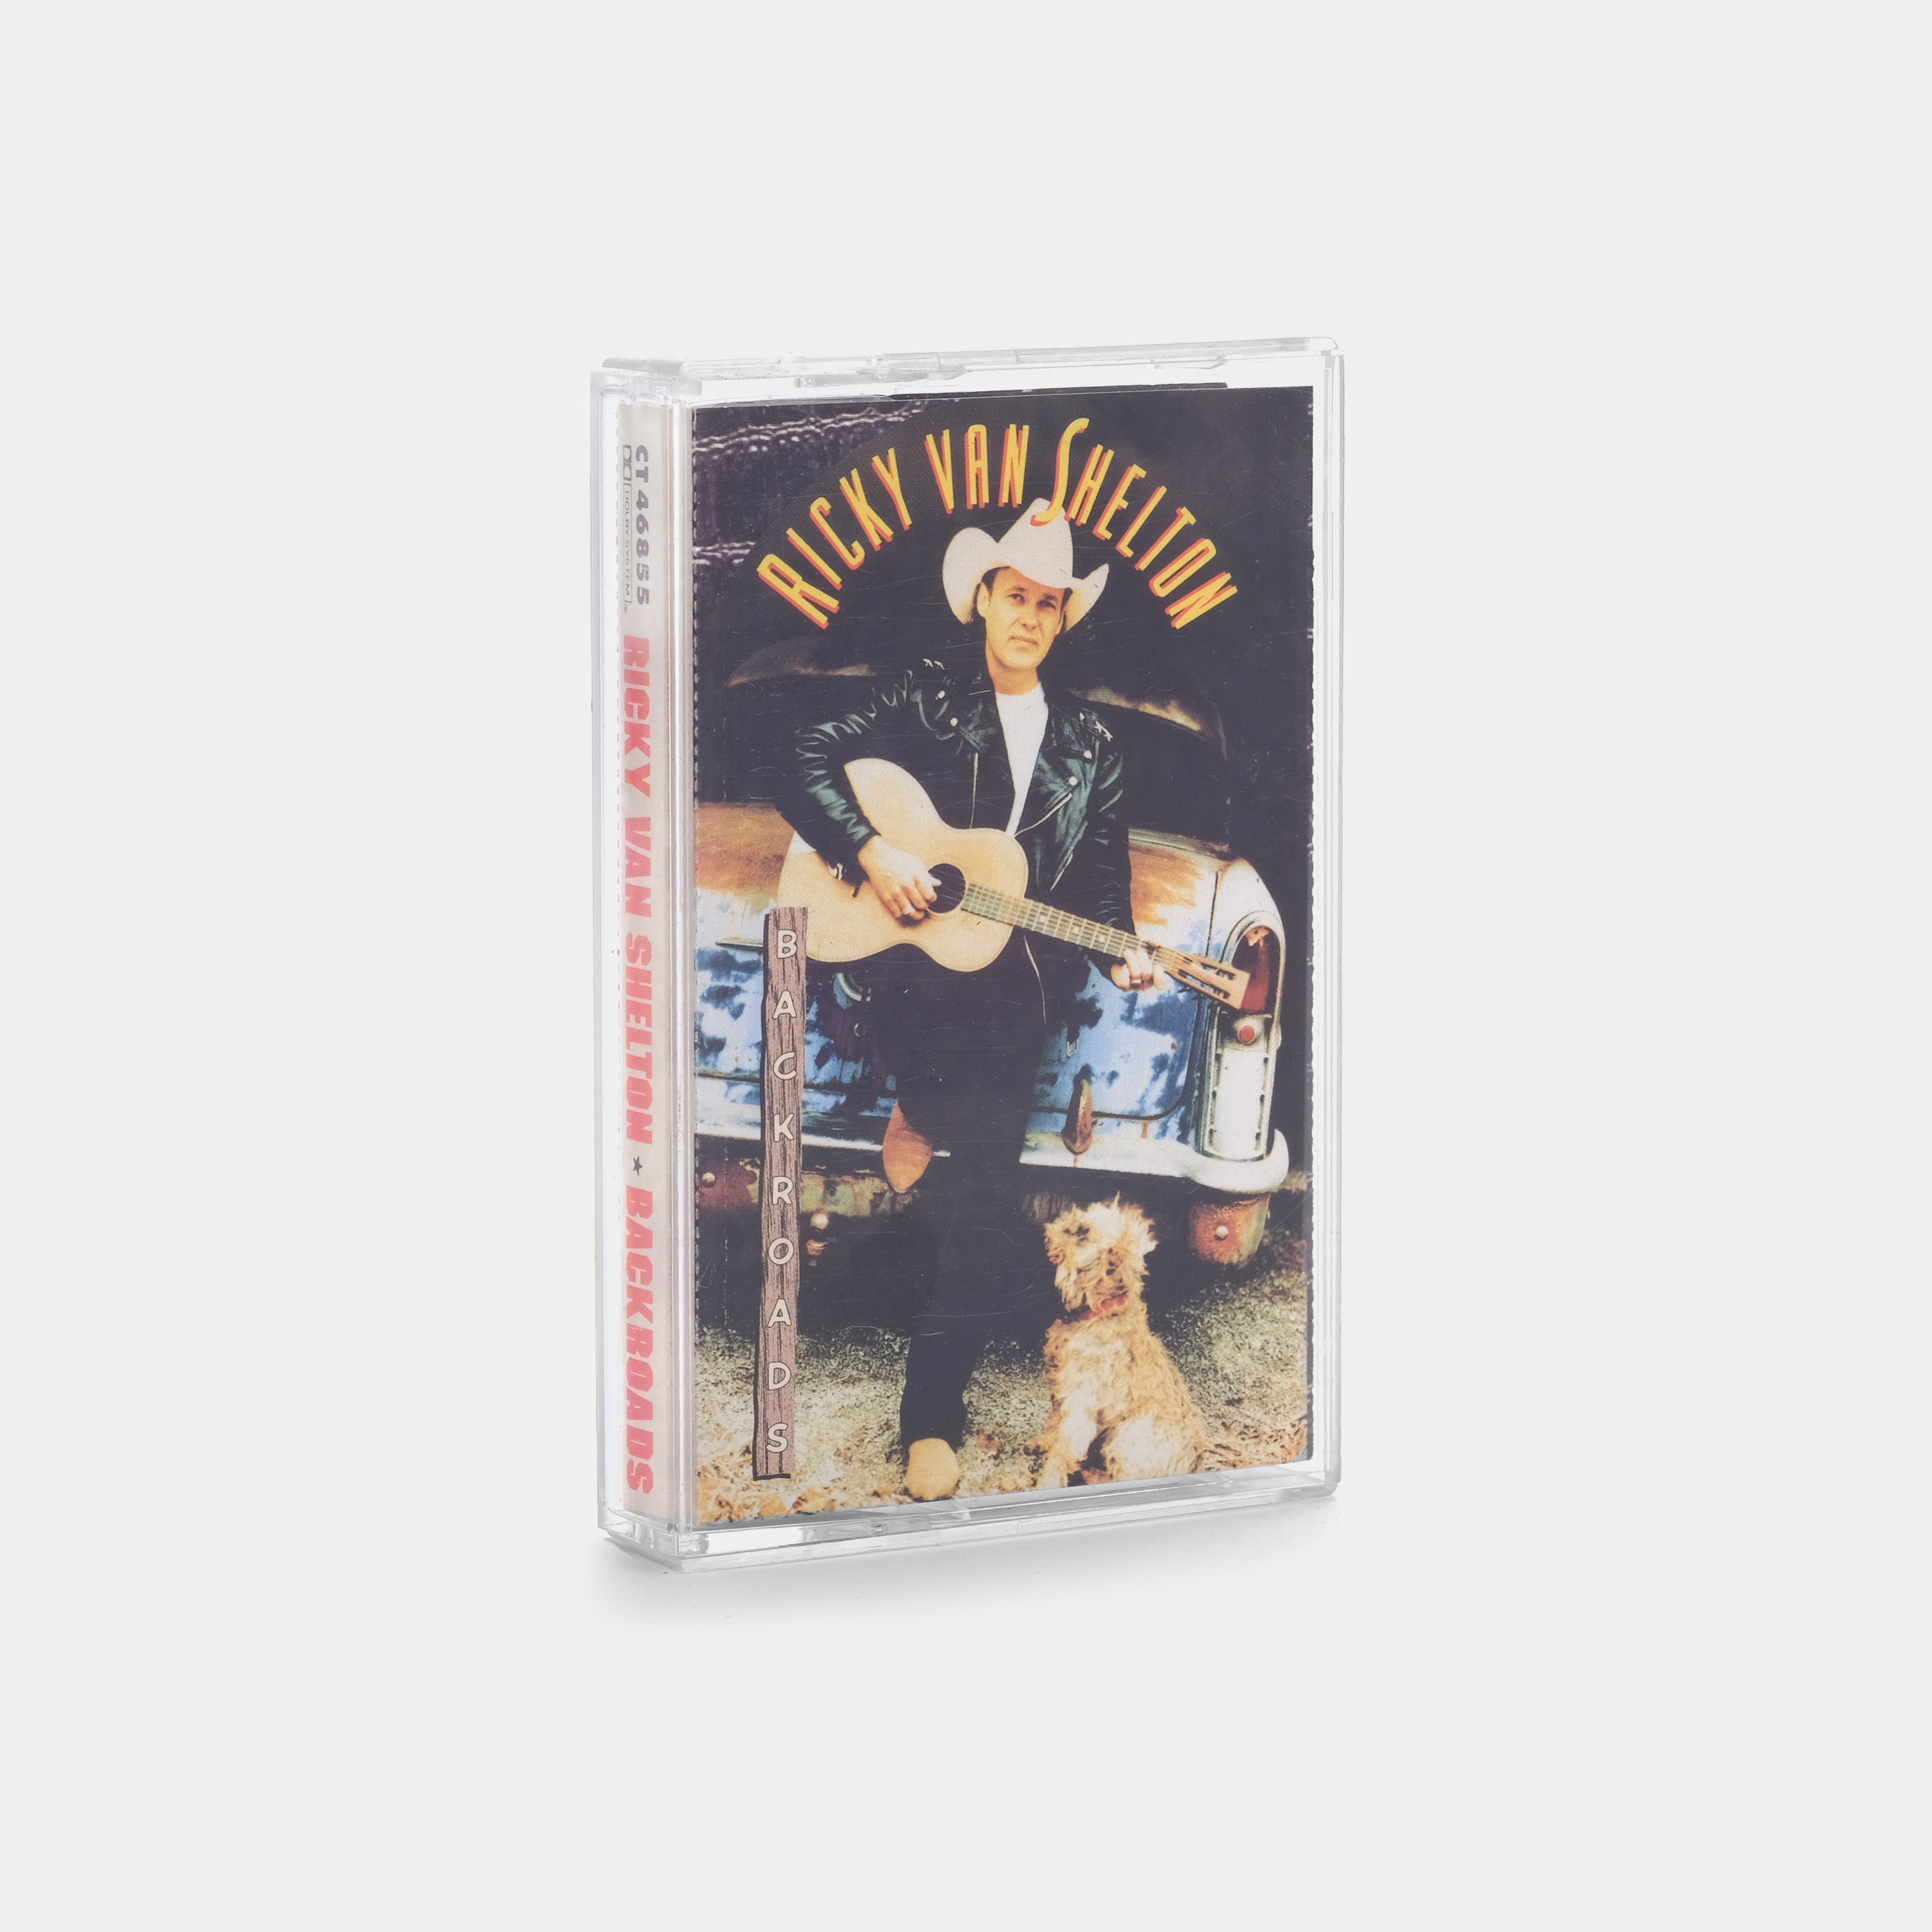 Ricky Van Shelton - Backroads Cassette Tape